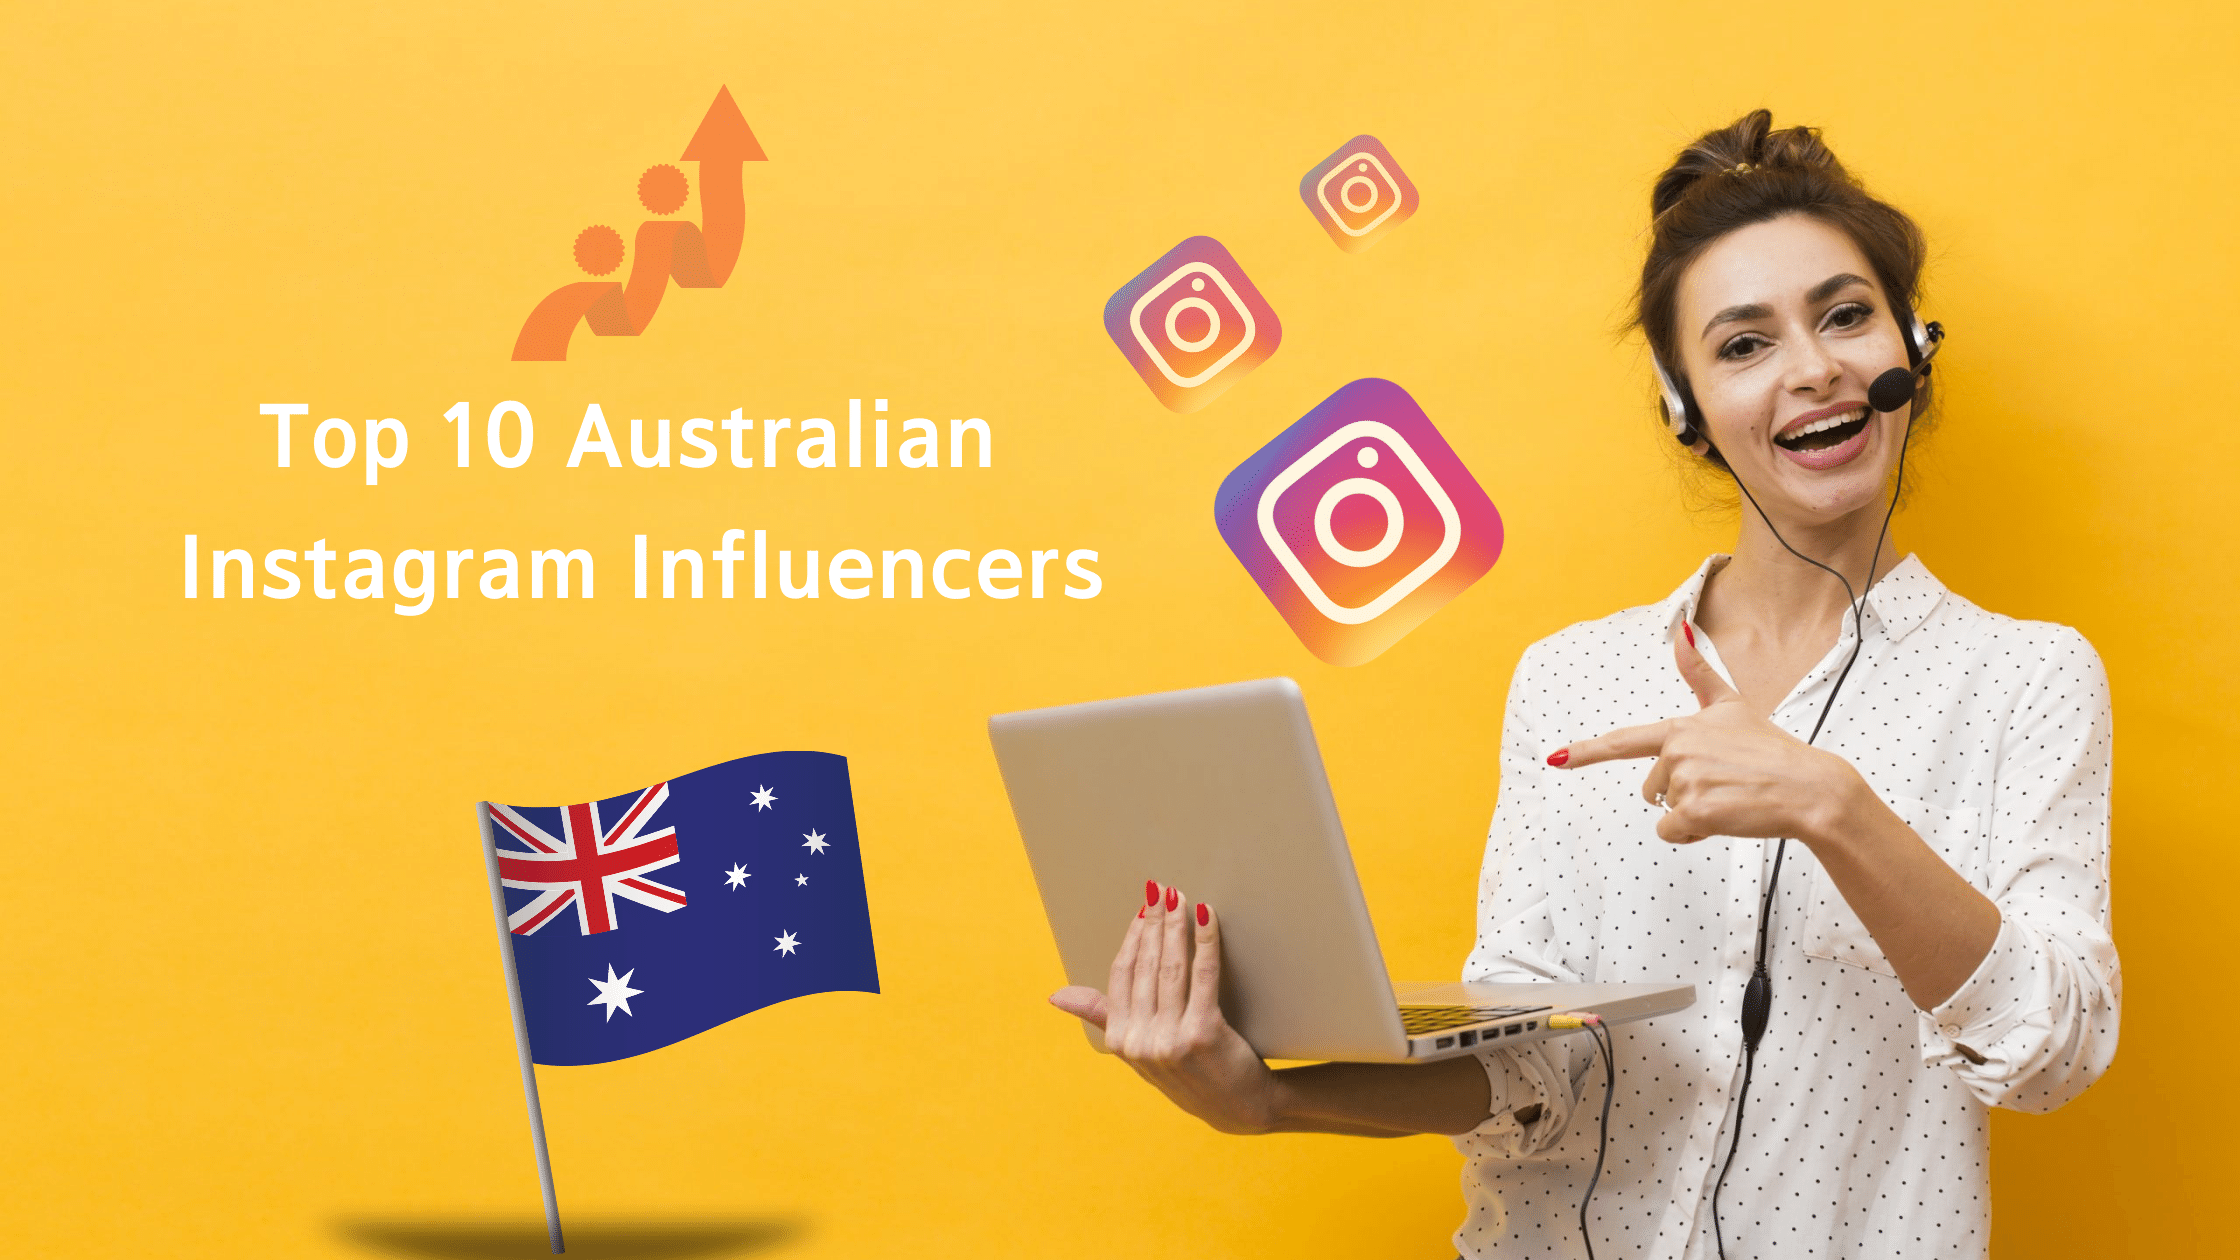 Top 10 Australian Instagram influencers